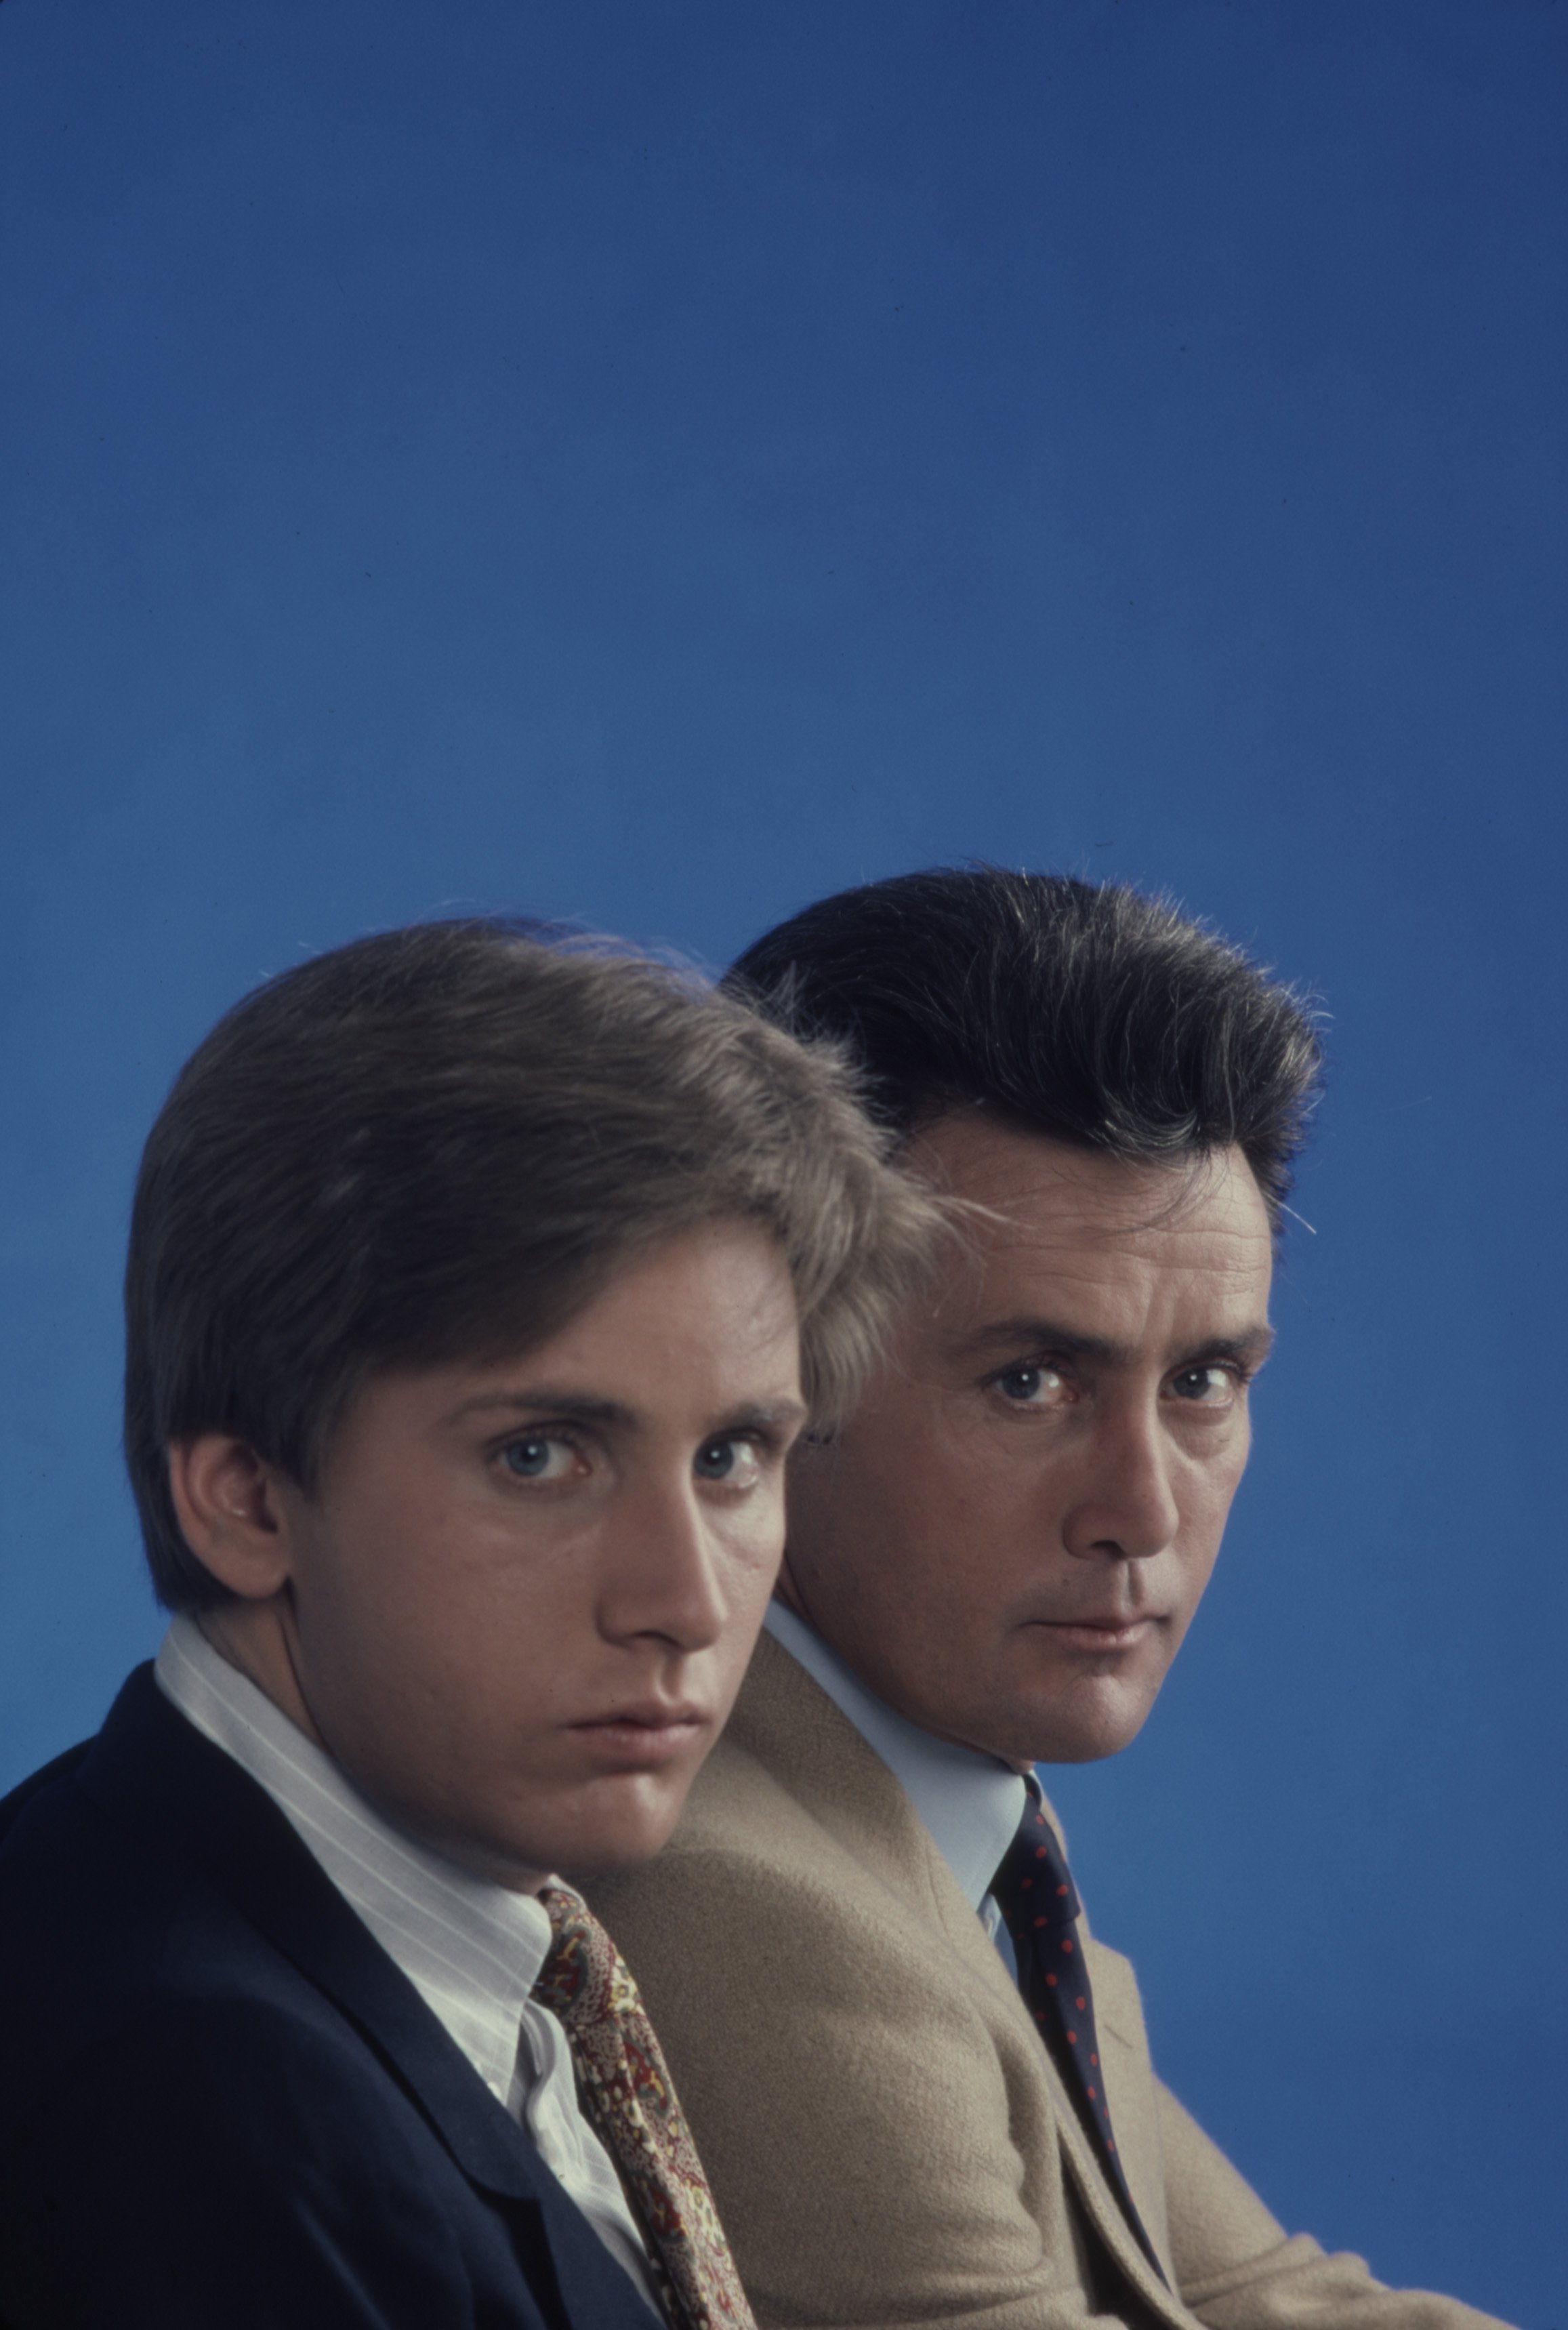 Emilio Estevez, Martin Sheen: Werbefoto für den ABC-Fernsehfilm "In the Custody of Strangers" von 1982 | Quelle: Getty Images